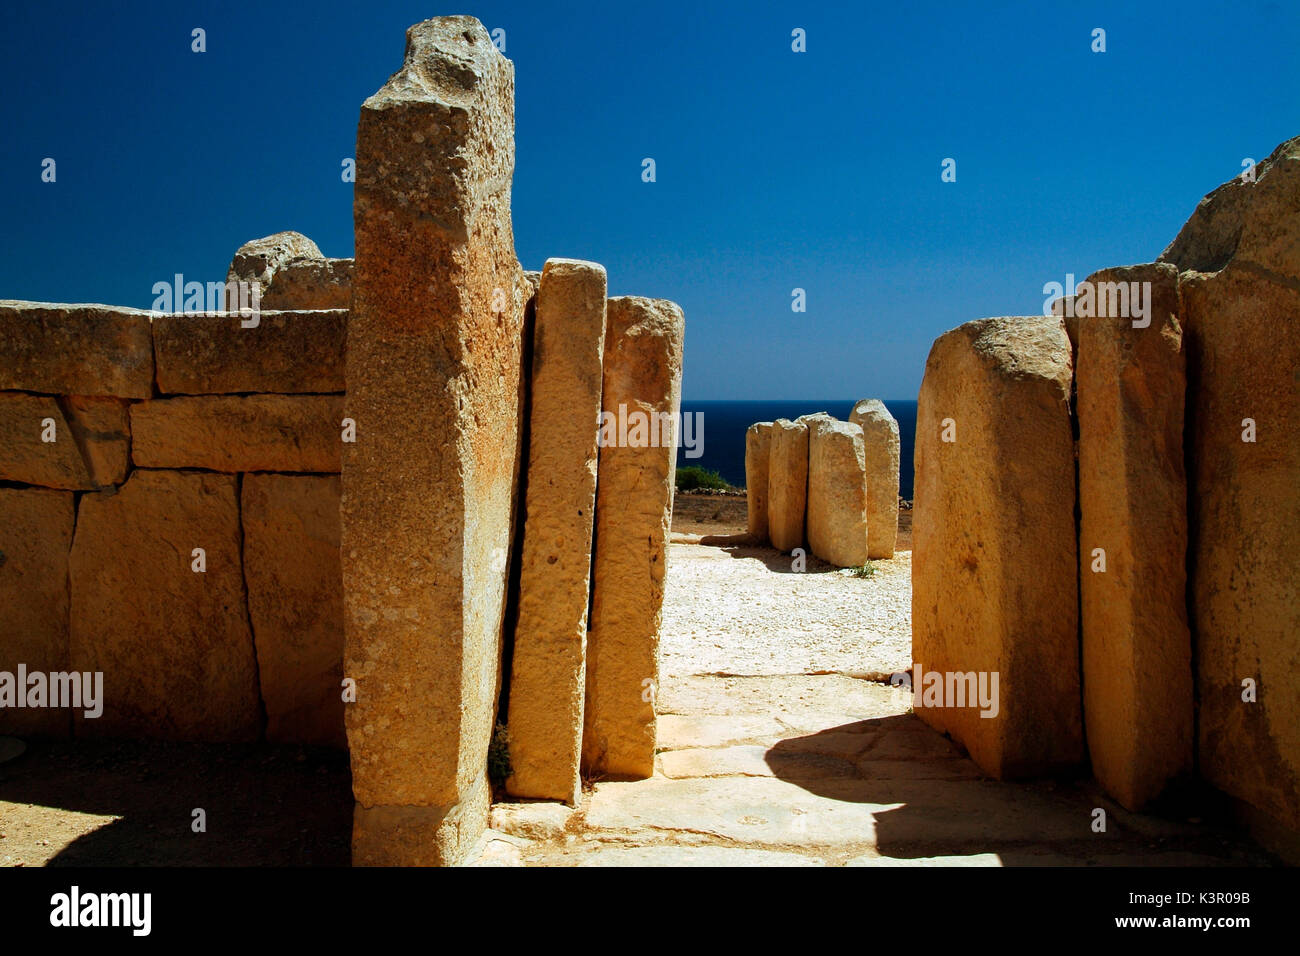 Hagar Qim est un groupe de t mégalithiques parmi les plus anciens sites religieux sur terre, décrit par les sites du patrimoine mondial en tant que comité des chefs-d'œuvre architectural unique Malte Europe Banque D'Images